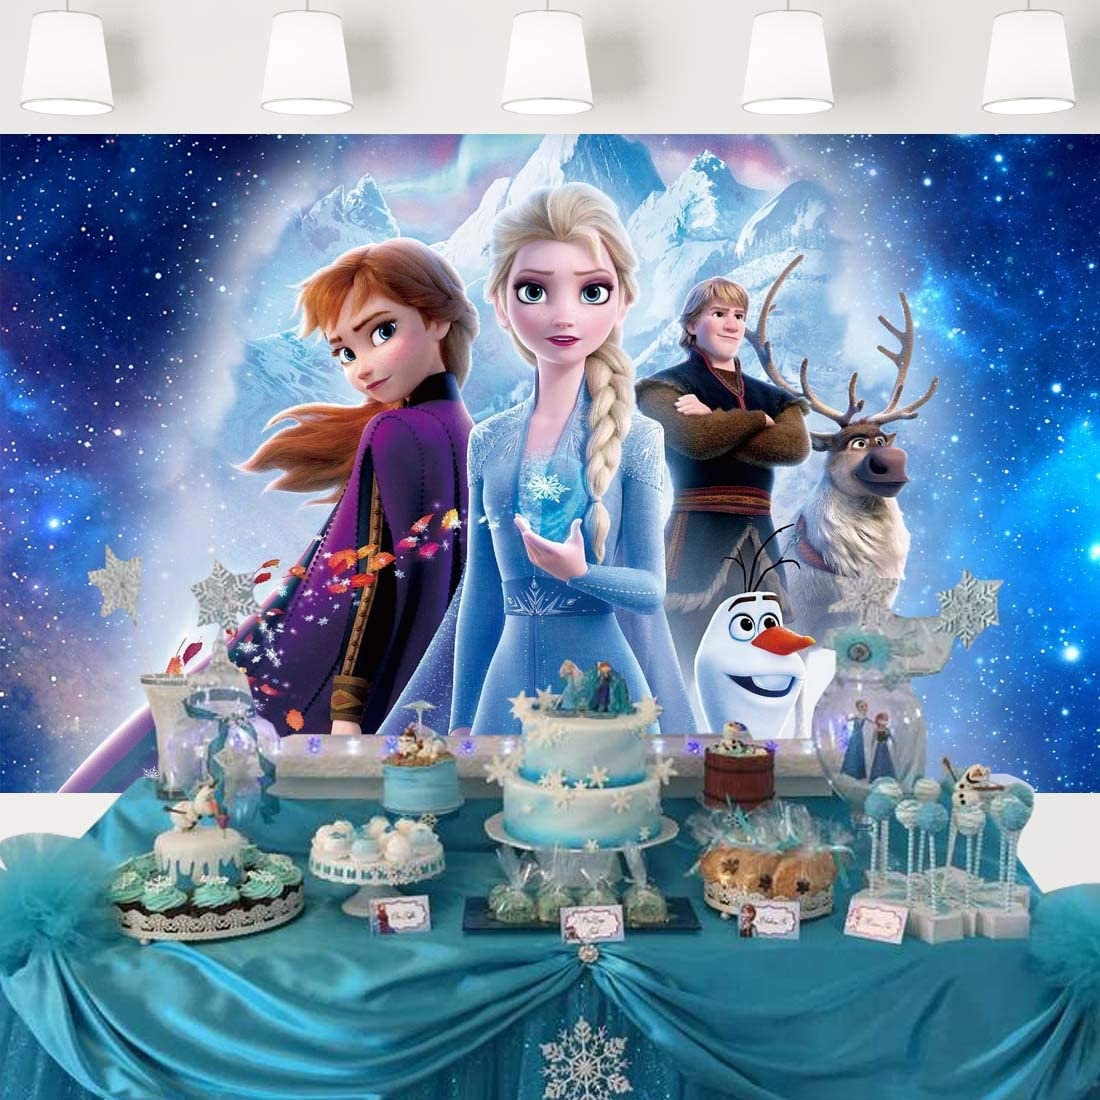 Pendon decorativo para fondo de cumpleaños Frozen Elsa